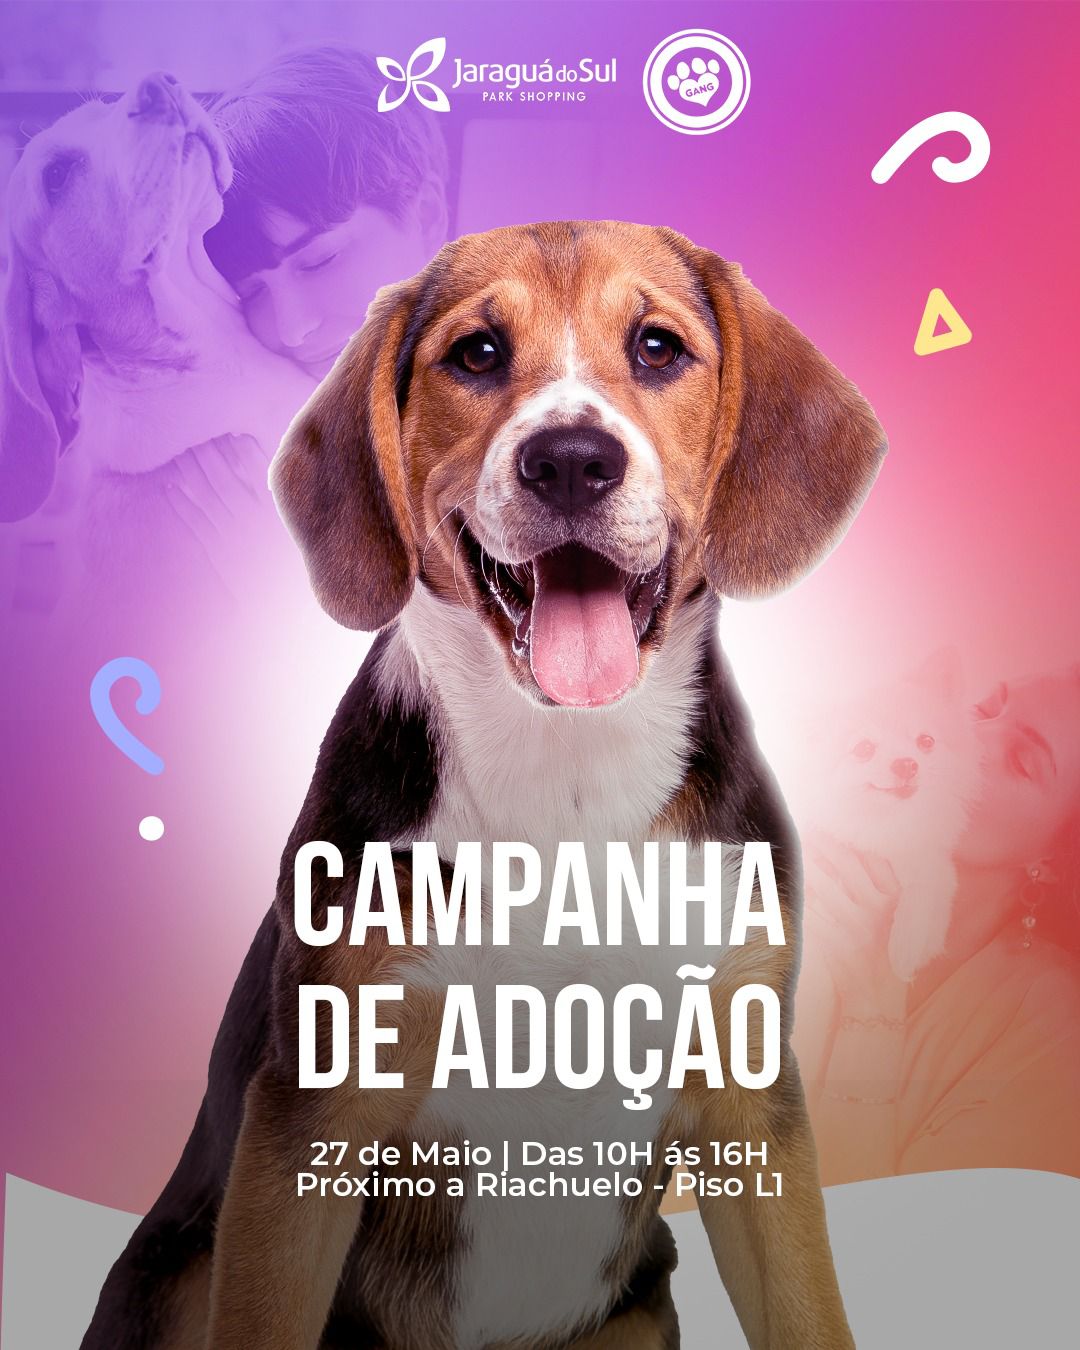 Campanha de adoção de animais acontece no Jaraguá do Sul Park Shopping neste sábado, dia 27